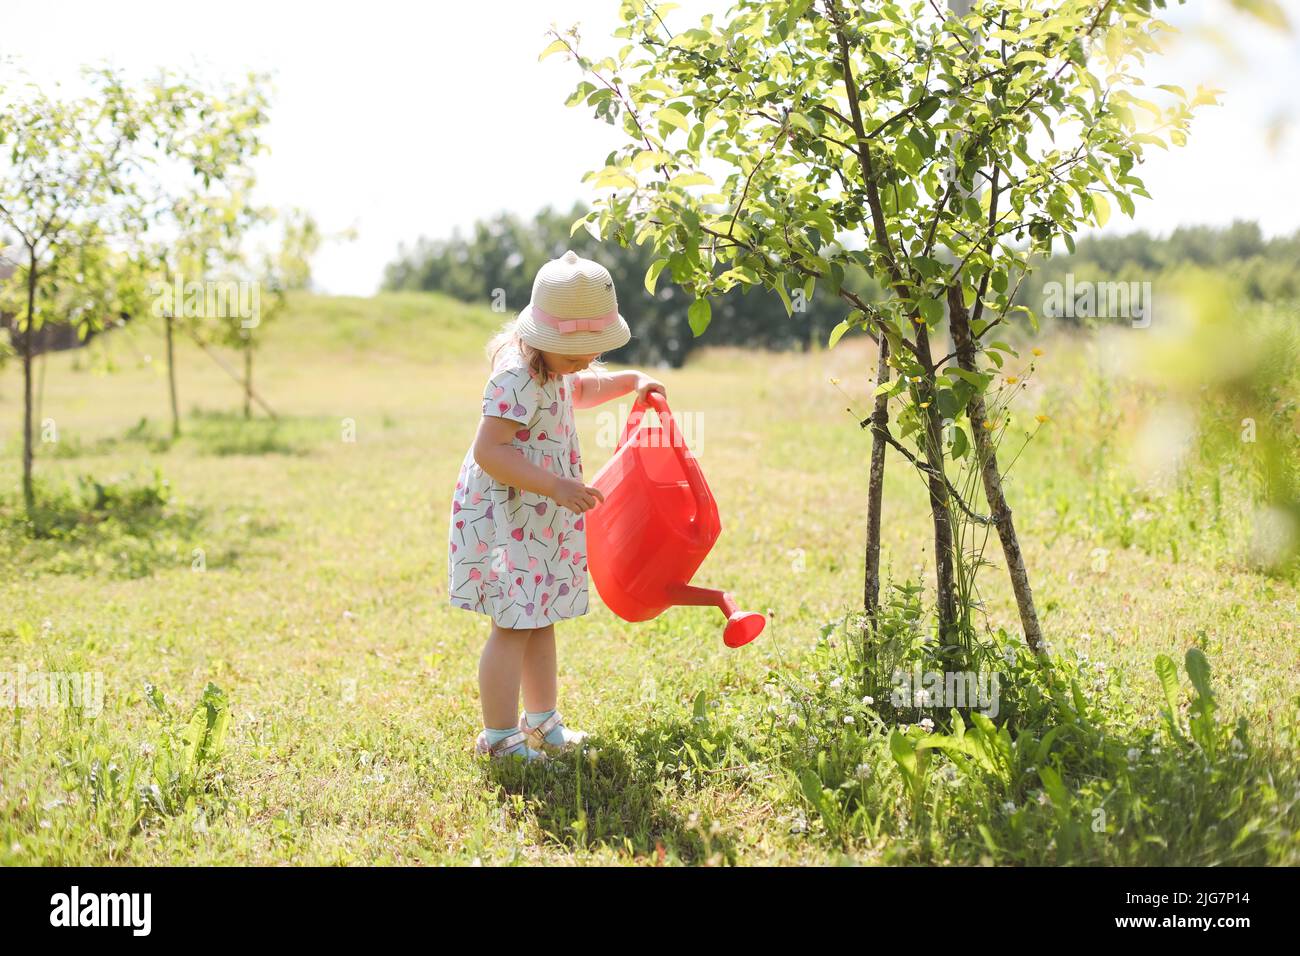 Ein kleines niedliches Baby Mädchen 3-4 Jahre alt in einem Kleid, das die Pflanzen aus einer Gießkannen im Garten wässert. Kinder haben Spaß beim Gartenarbeiten auf einem hellen sonnigen Stockfoto